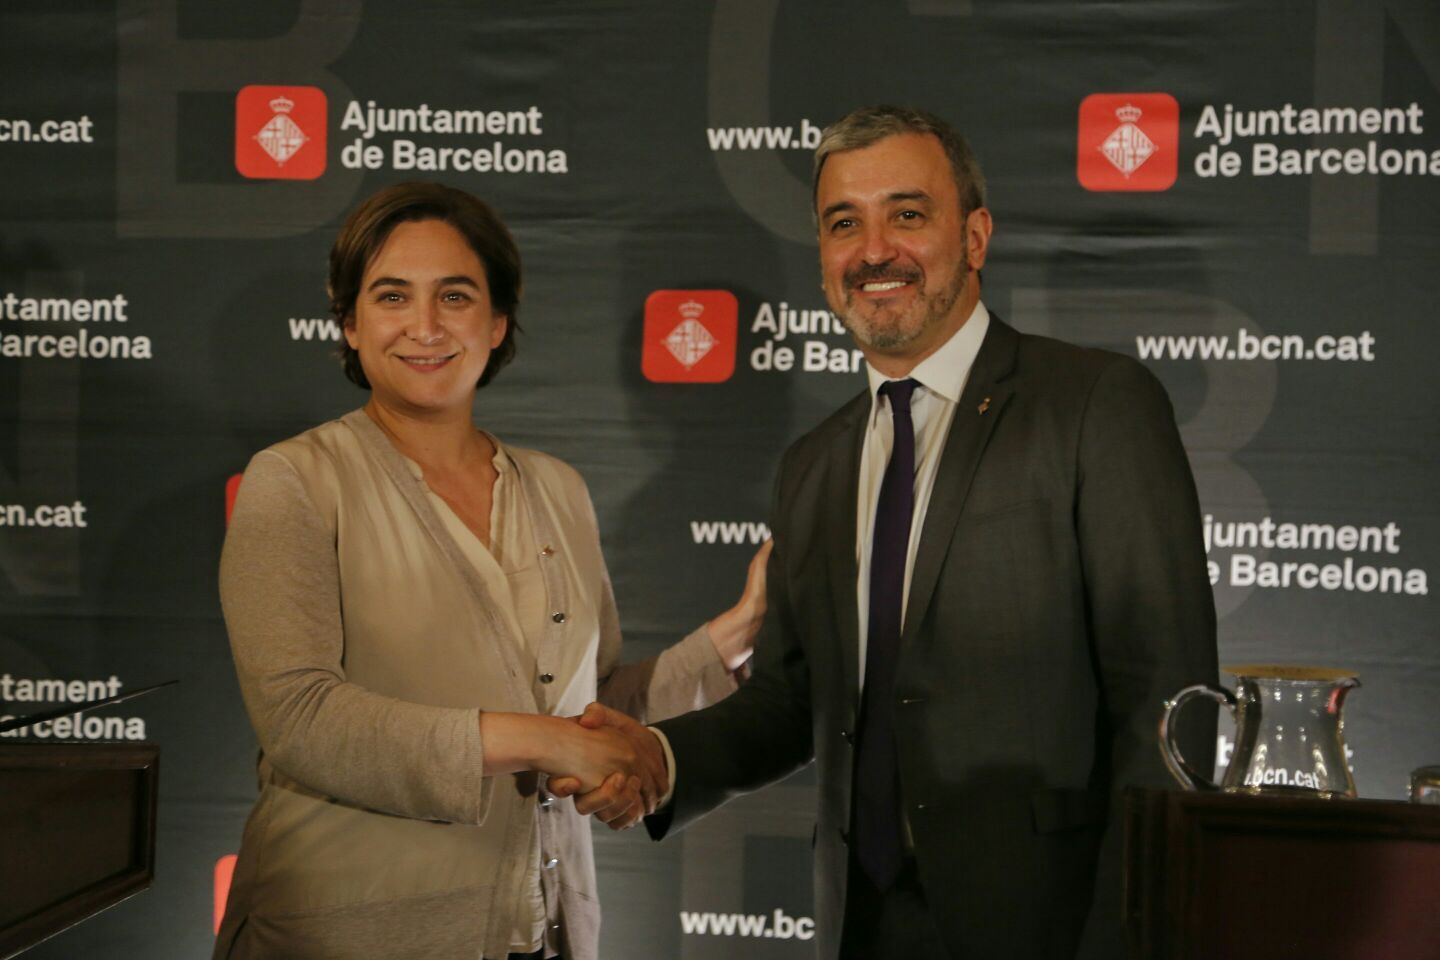 Jaume Collboni ja és segon tinent d'alcalde